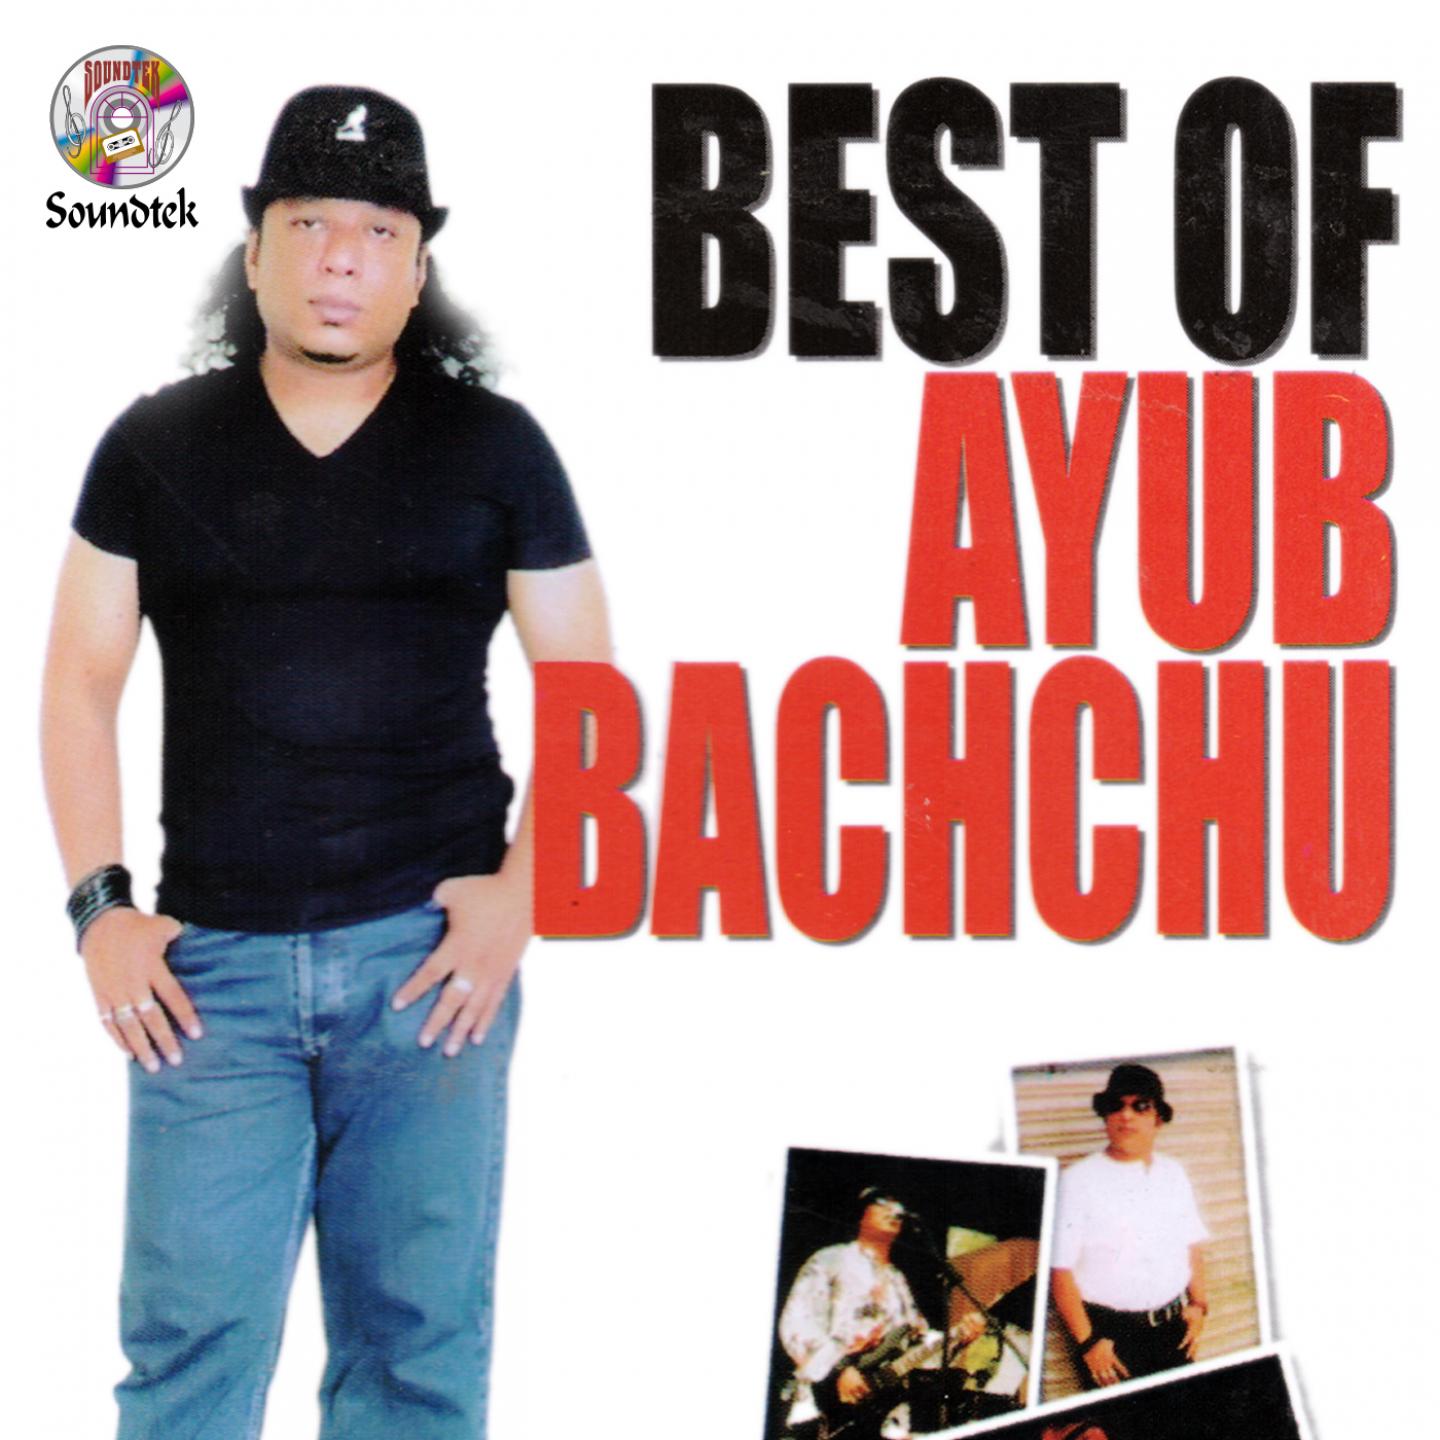 Best of Ayub Bachchu